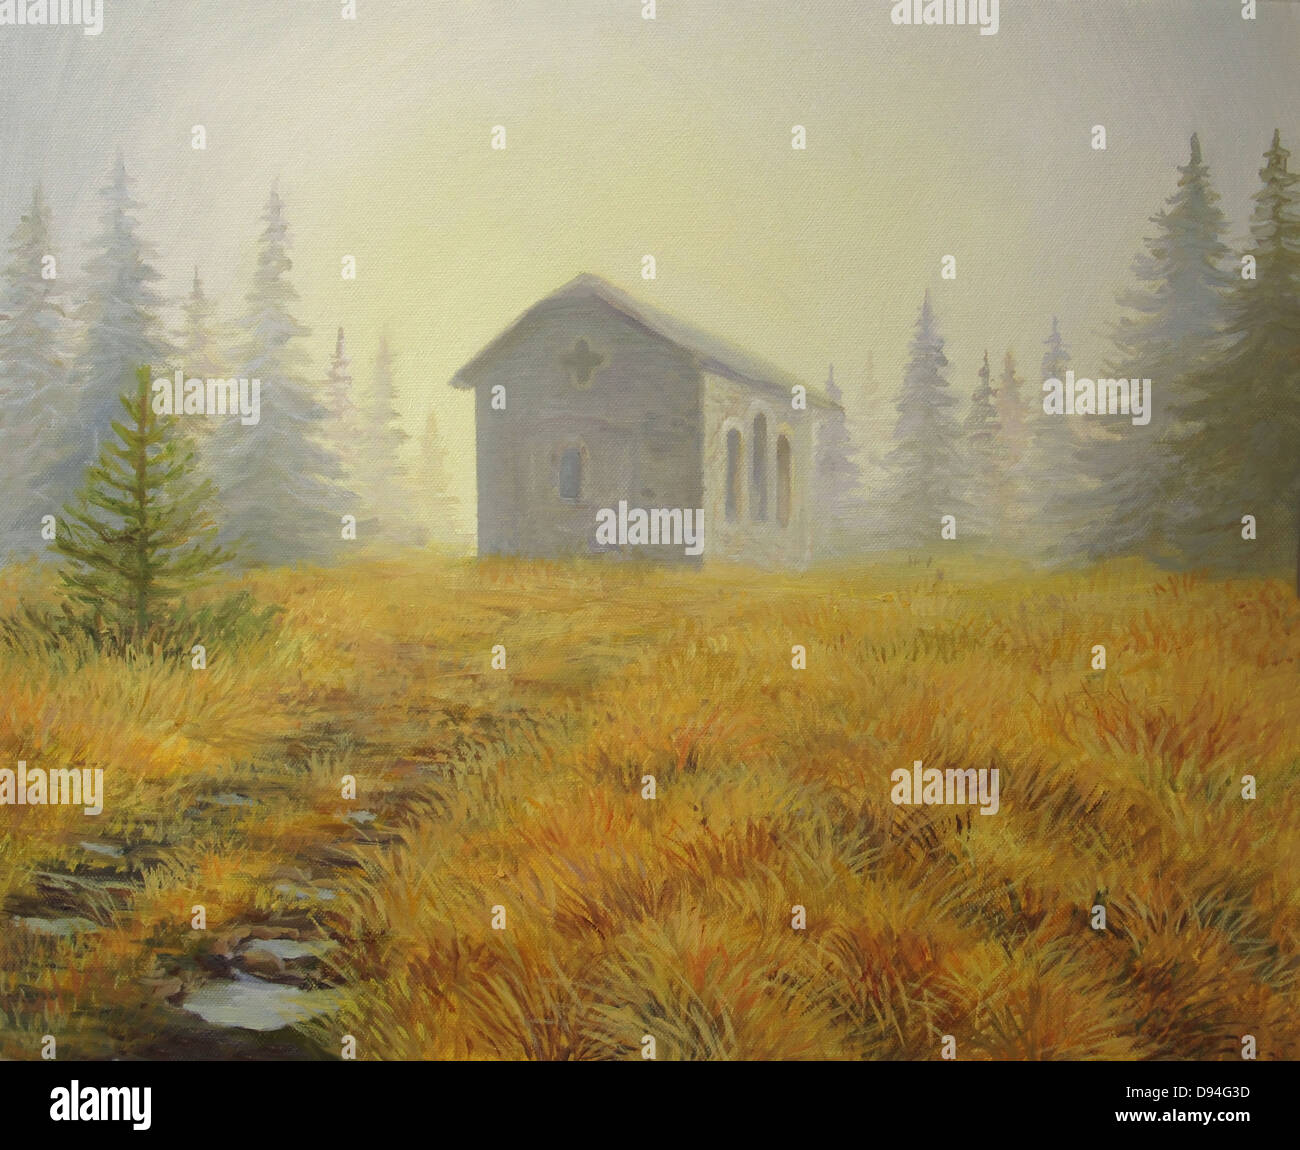 Un dipinto ad olio su tela di una piccola cappella in alta montagna, incandescente nelle prime ore del mattino la nebbia. Foto Stock